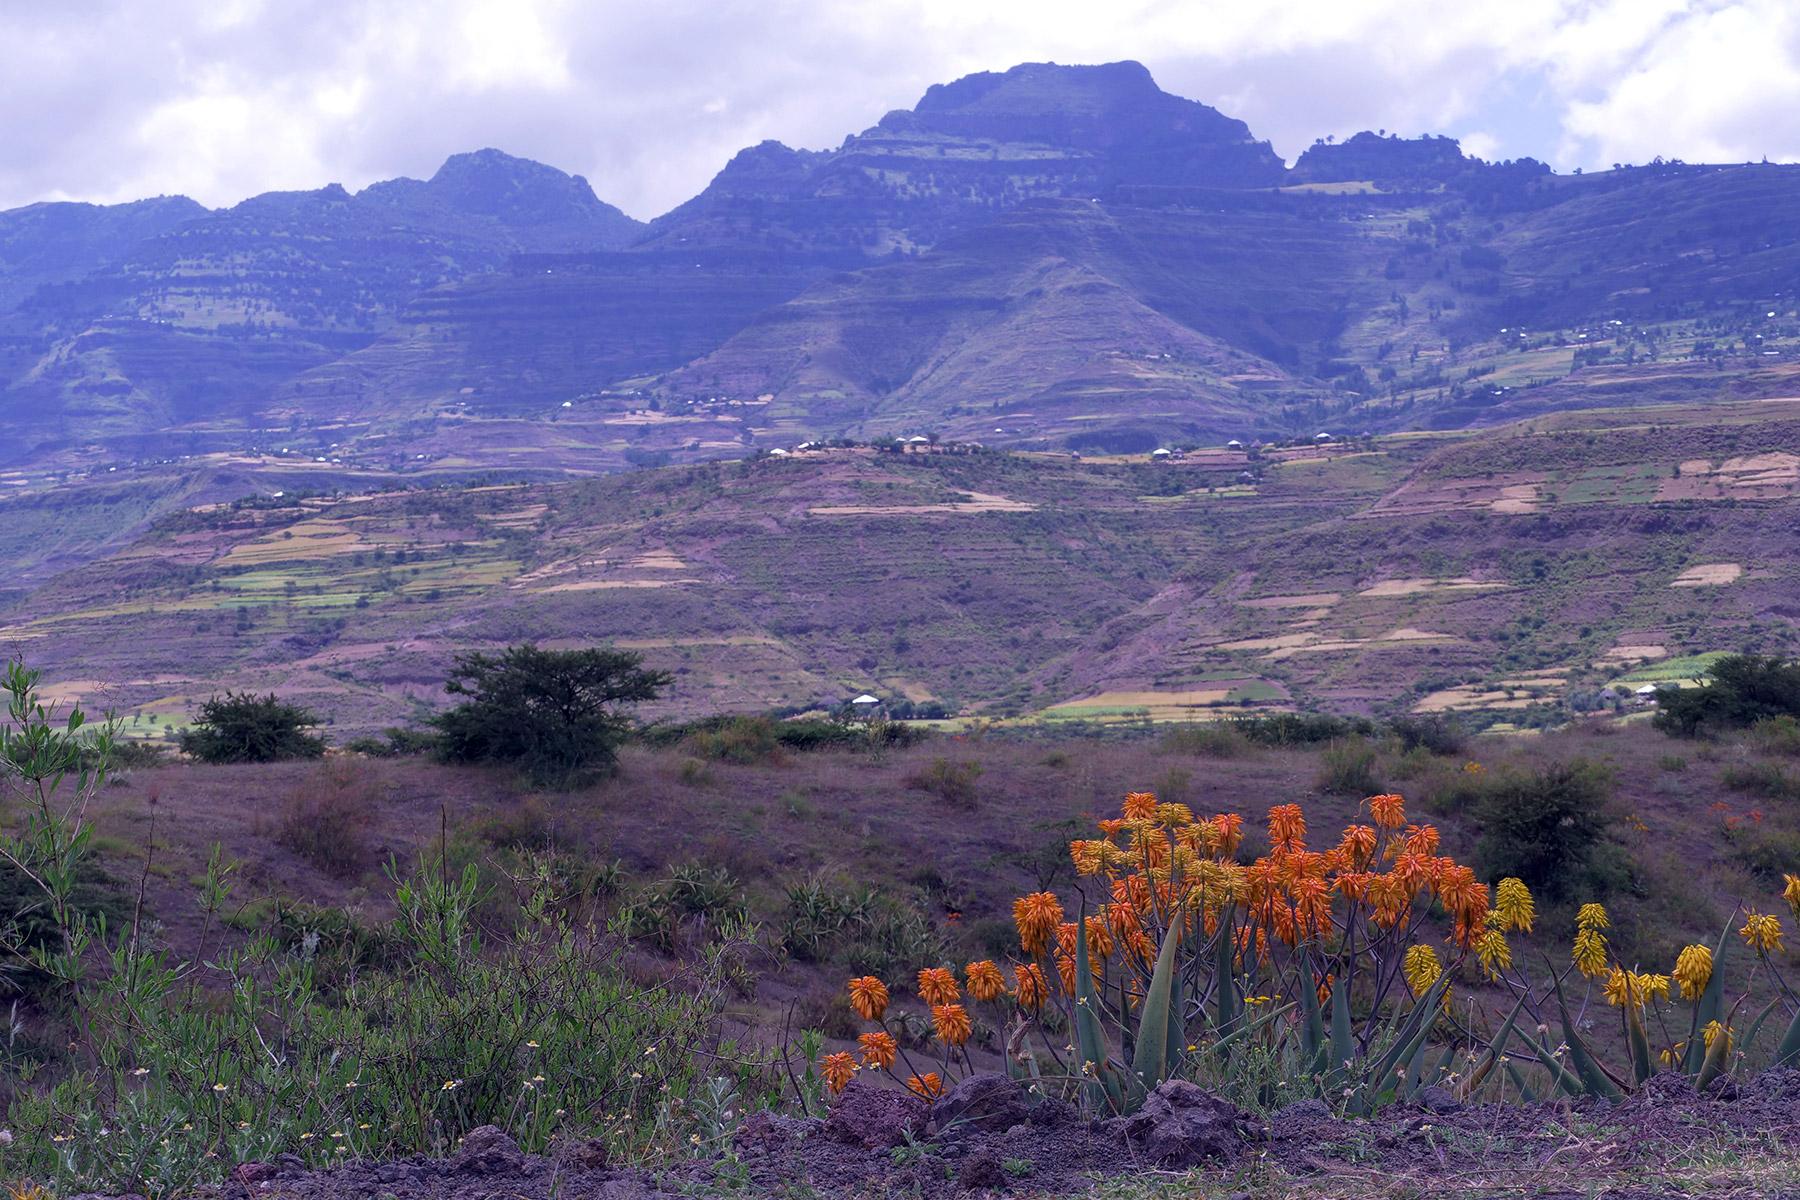 Landschaft in der Verwaltungsregion Amhara, einer Nachbarregion von Tigray in Äthiopien. Foto: LWB/C. Kästner